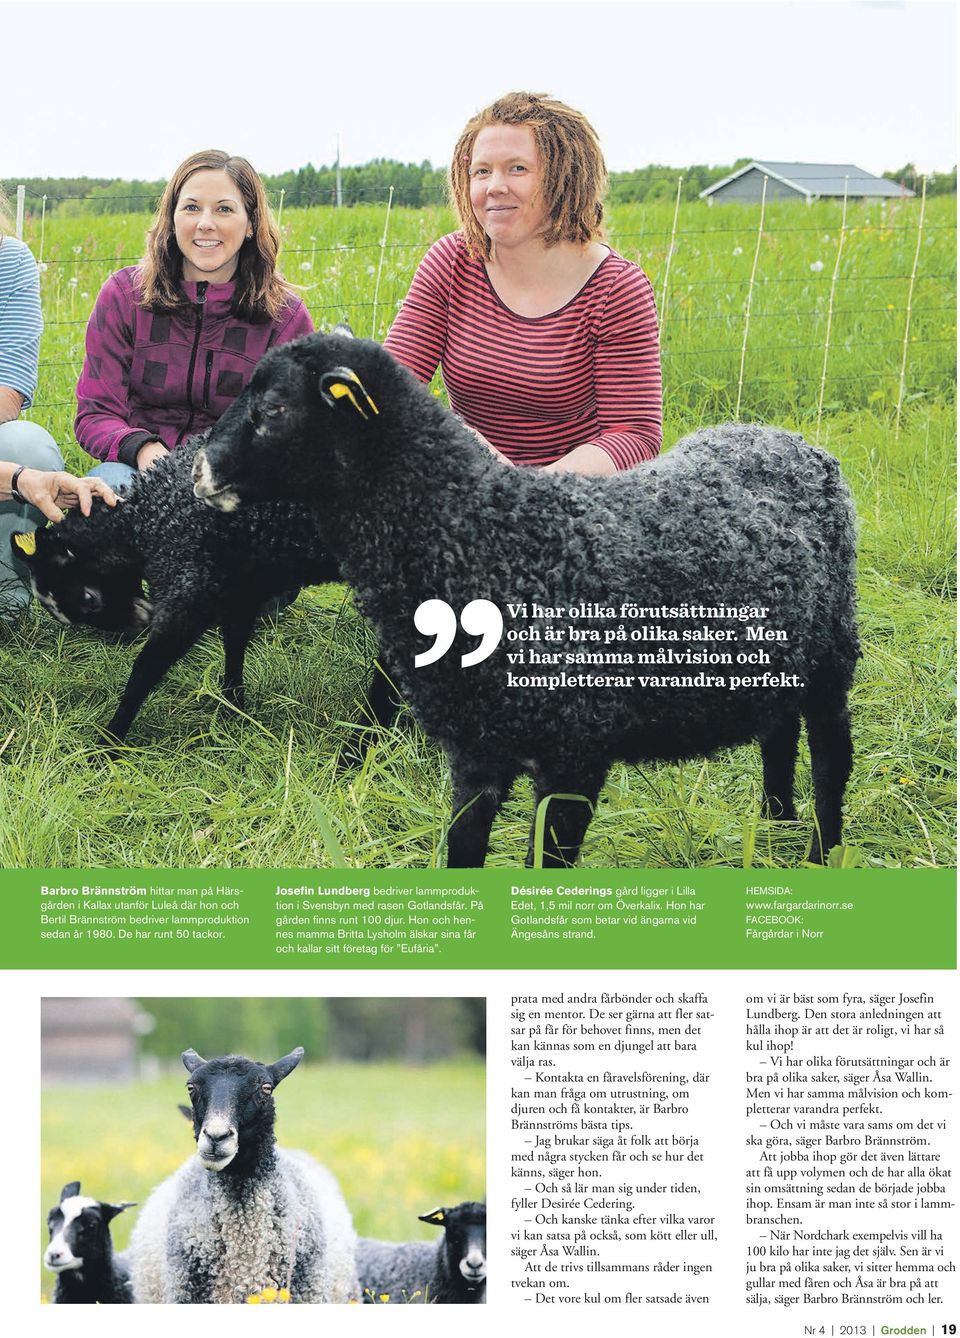 Josefin Lundberg bedriver lammproduktion i Svensbyn med rasen Gotlandsfår. På gården finns runt 100 djur. Hon och hennes mamma Britta Lysholm älskar sina får och kallar sitt företag för Eufåria.